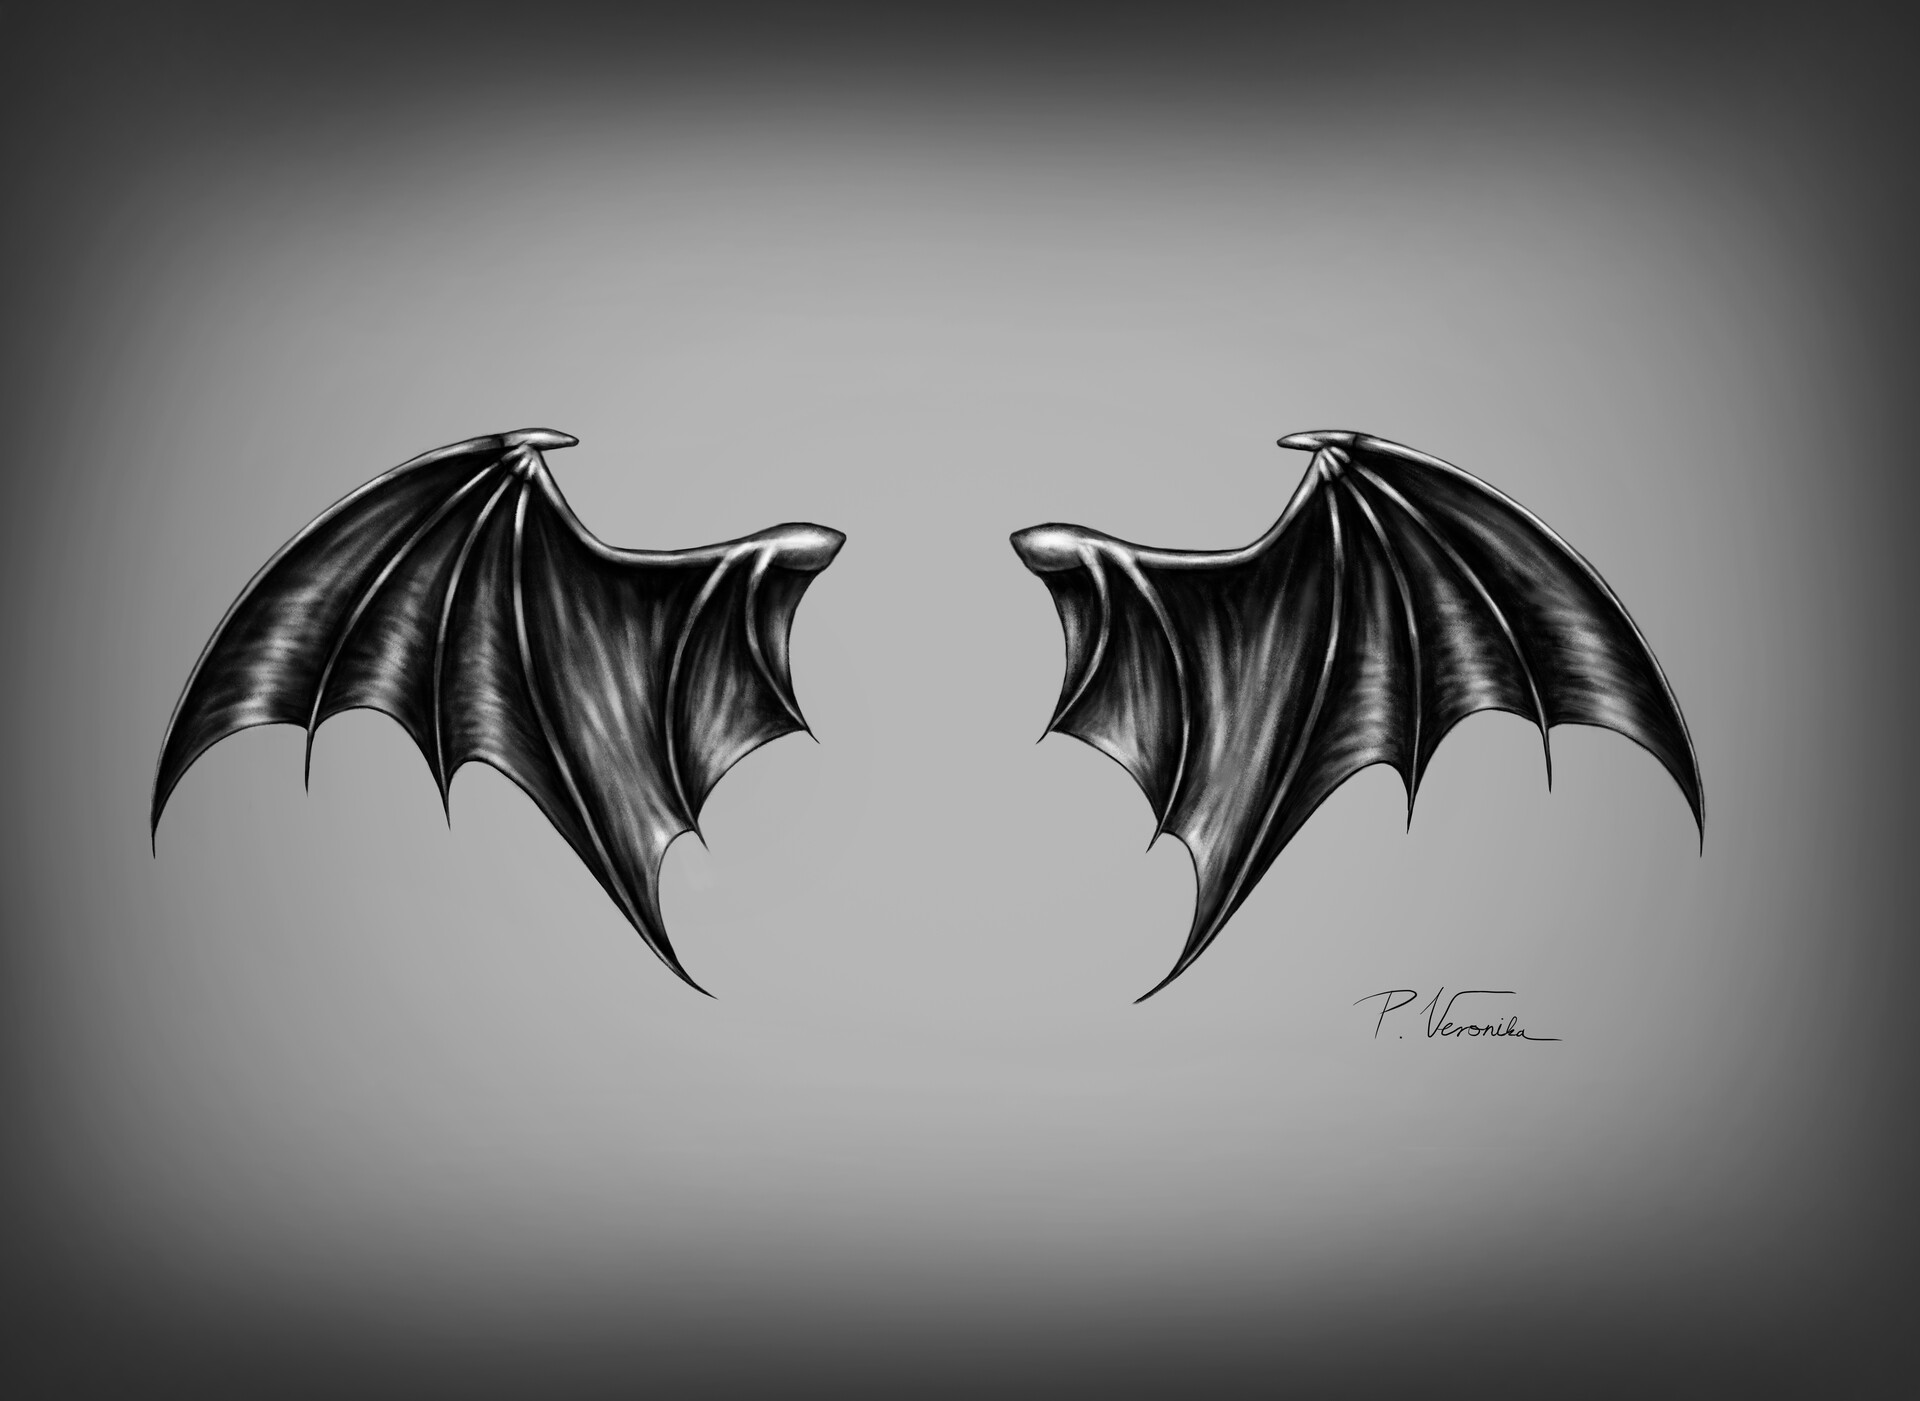 demon wings tattoos